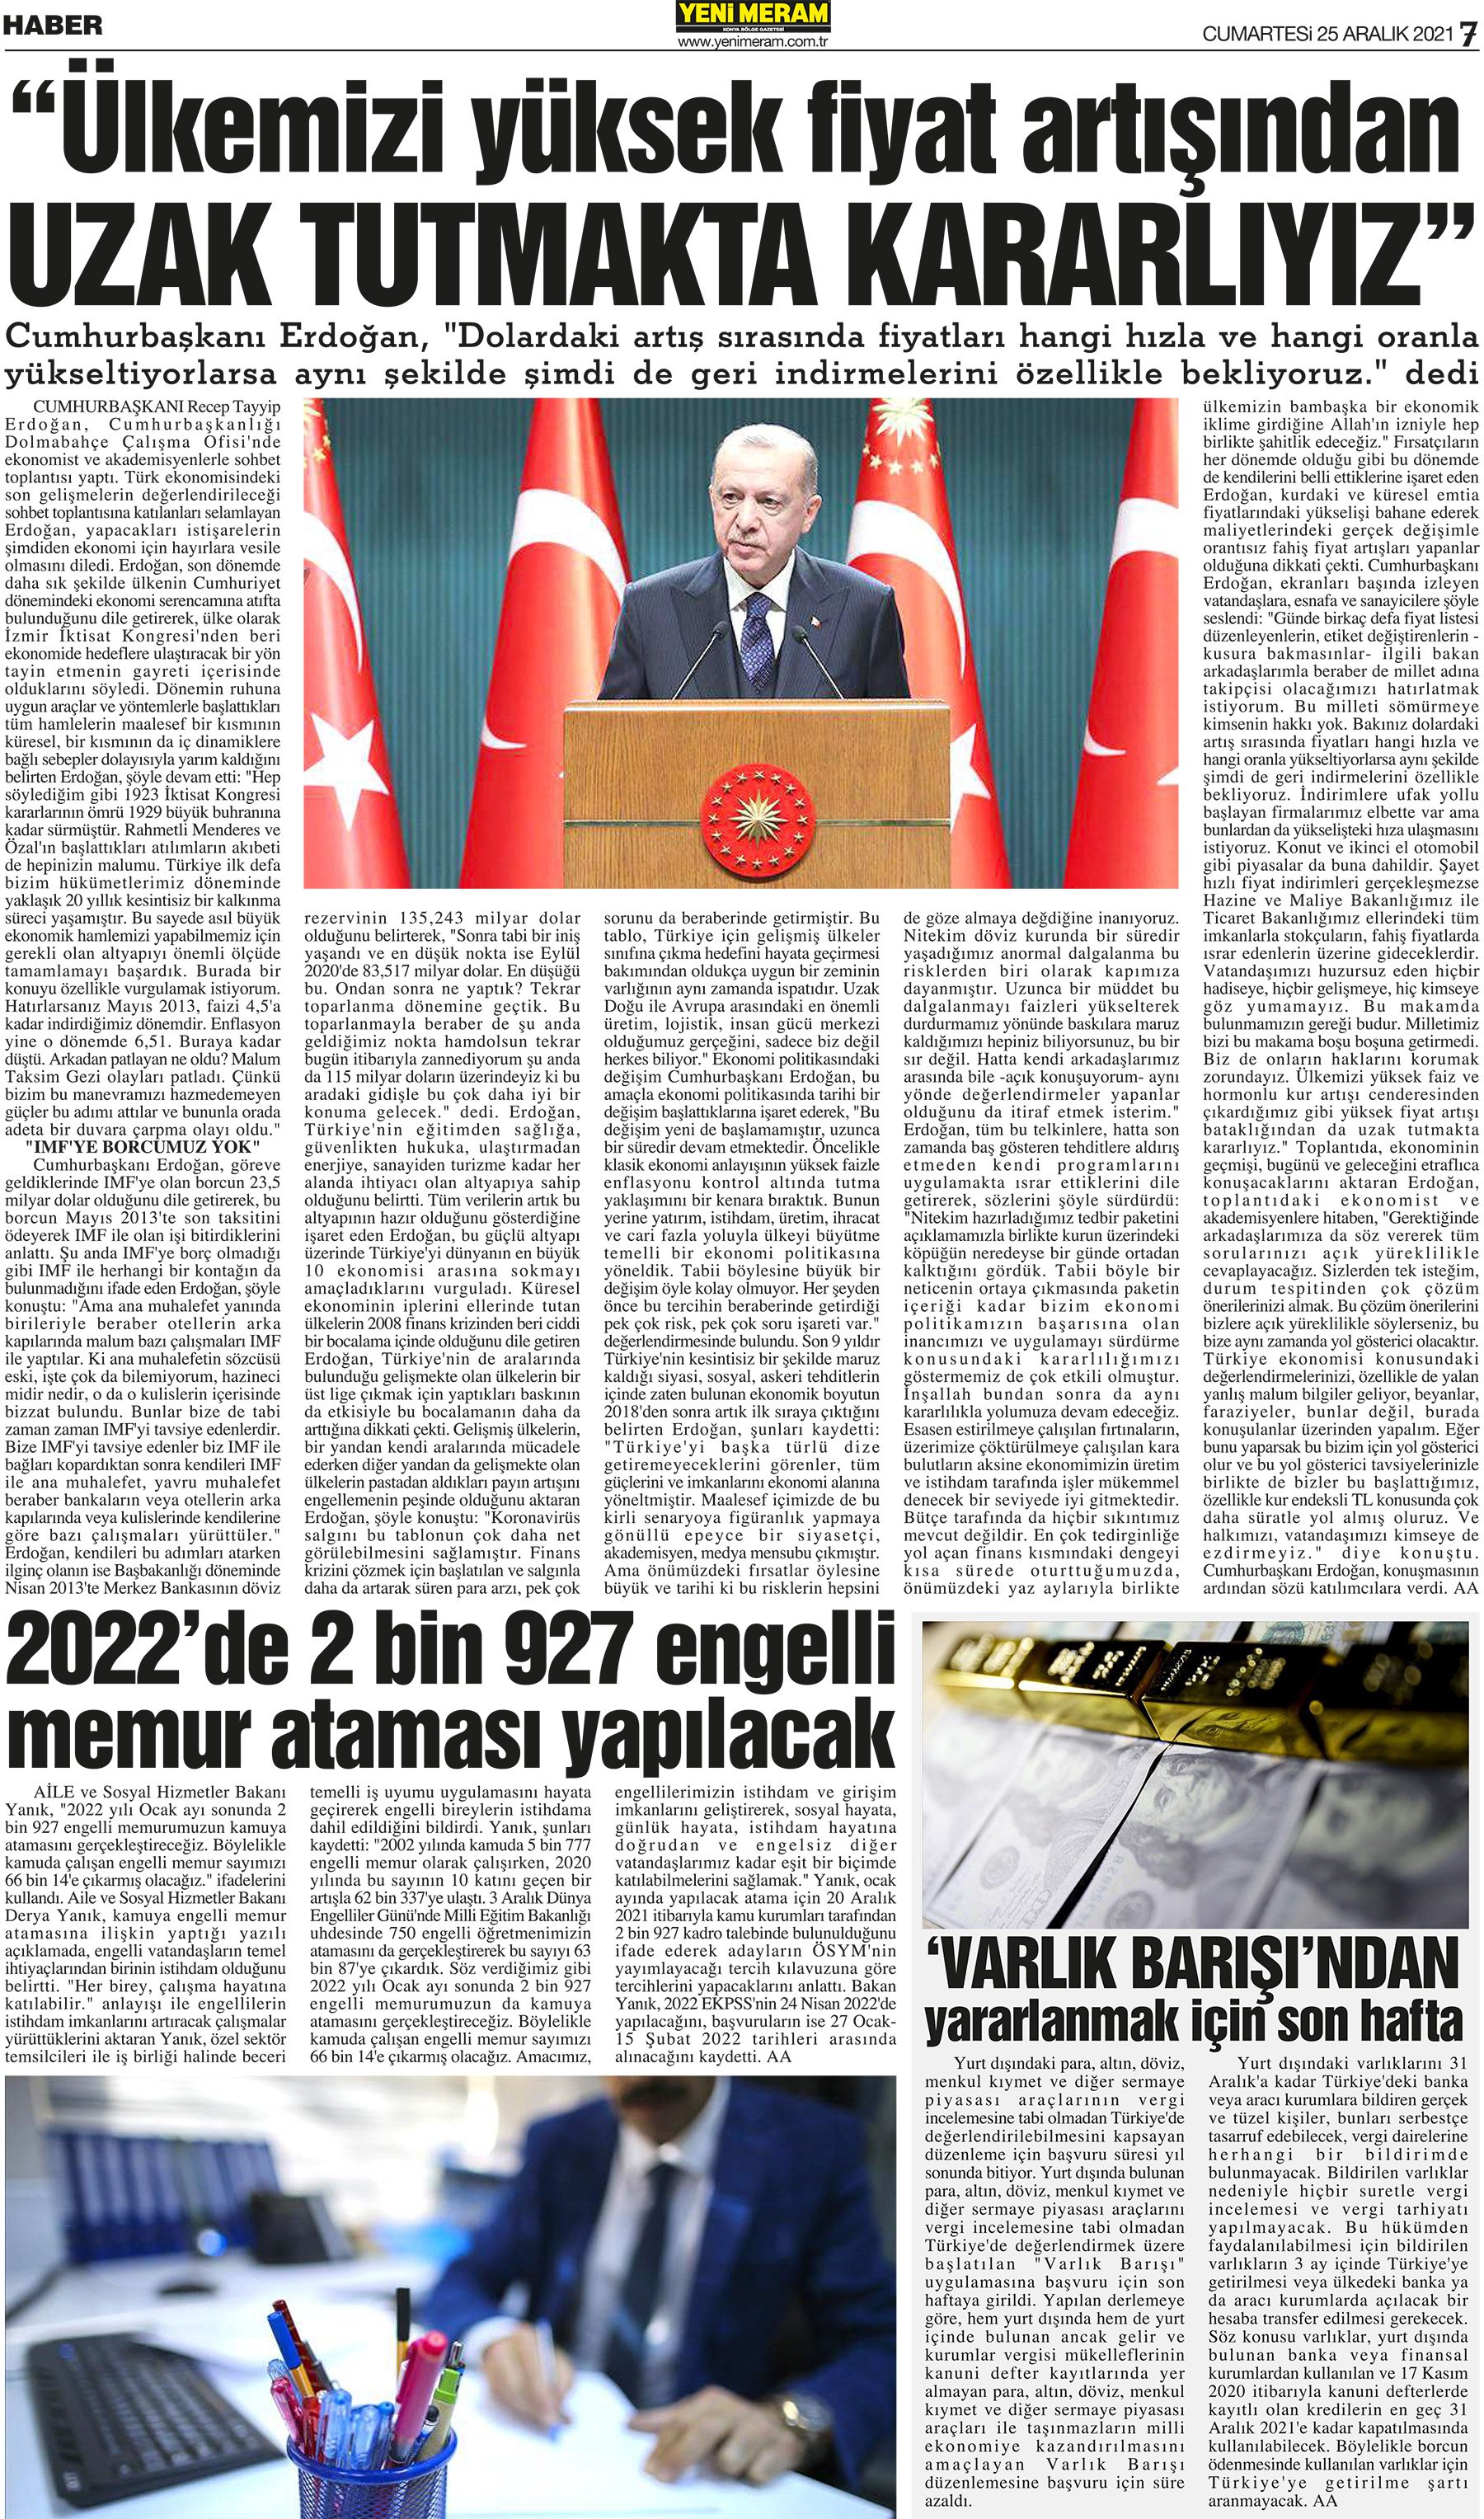 25 Aralık 2021 Yeni Meram Gazetesi